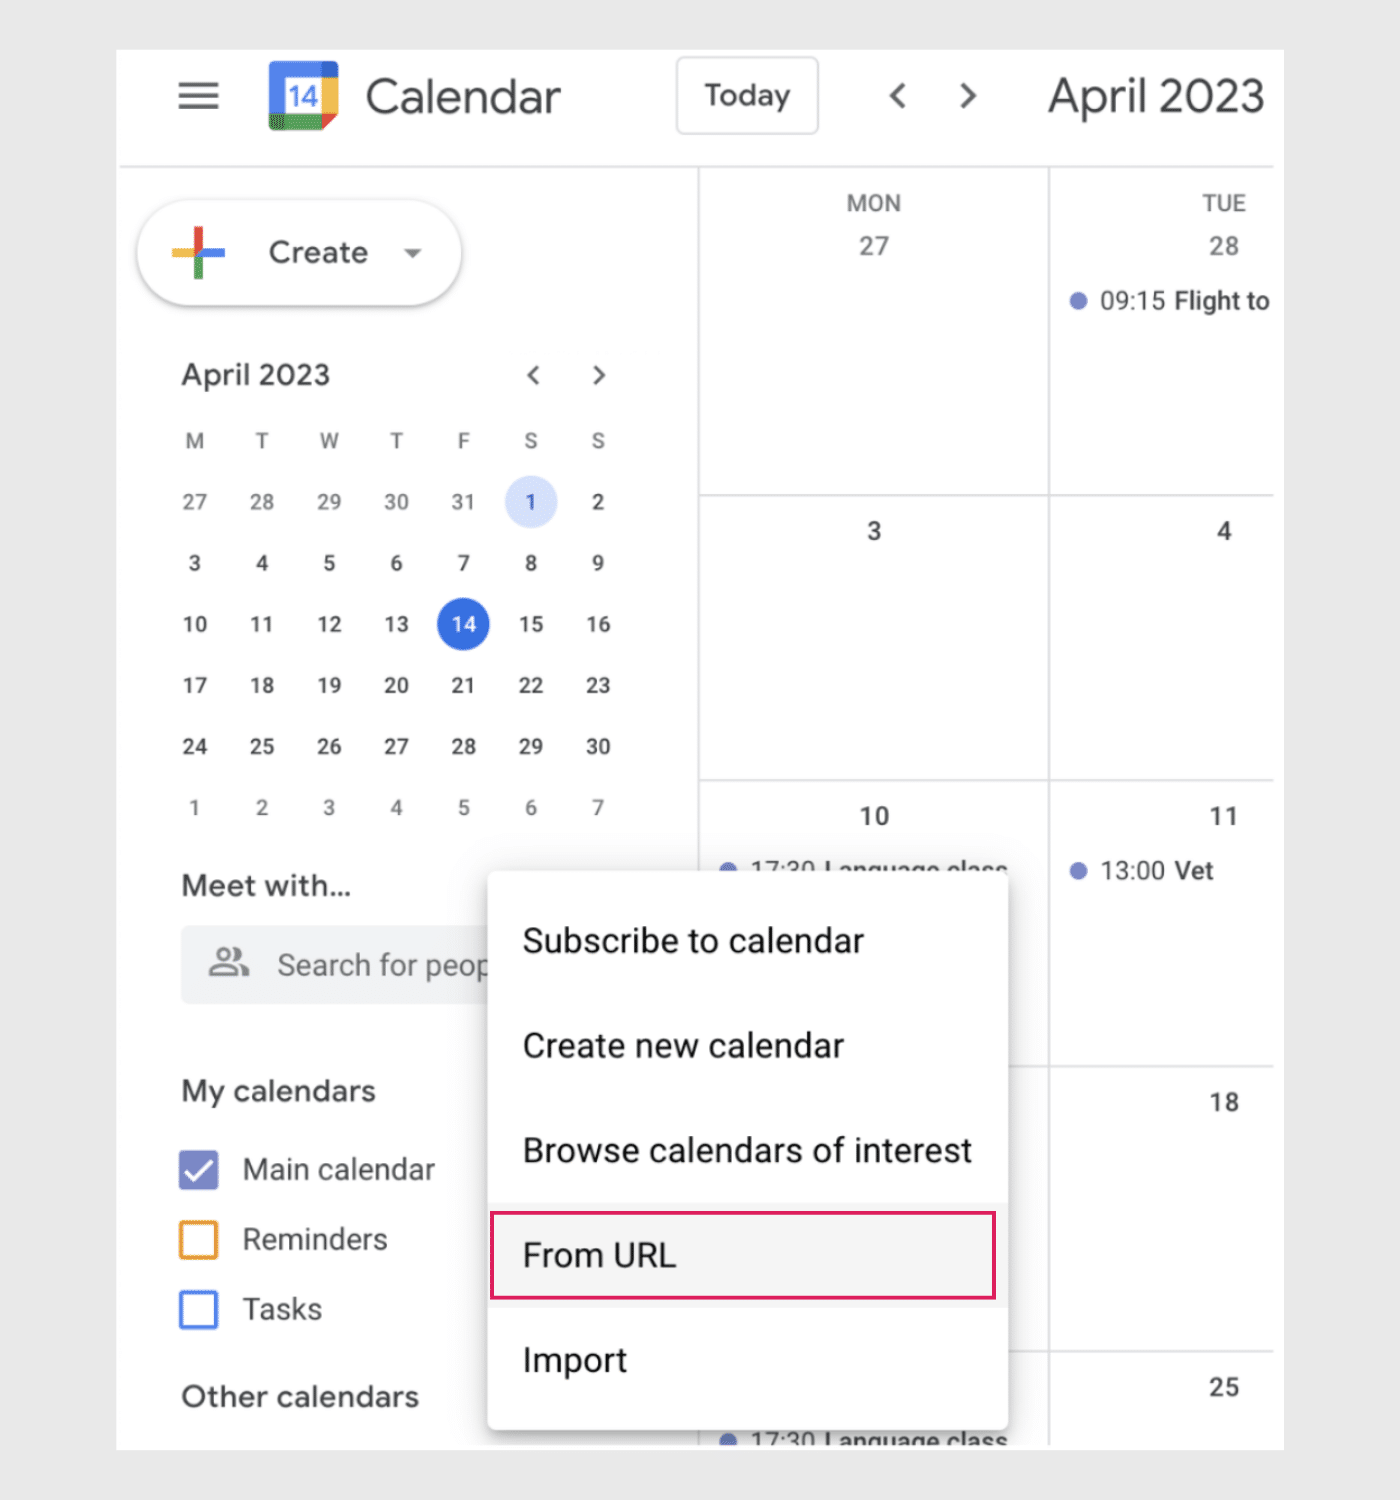 How to Sync Microsoft Teams Calendar with Google Calendar